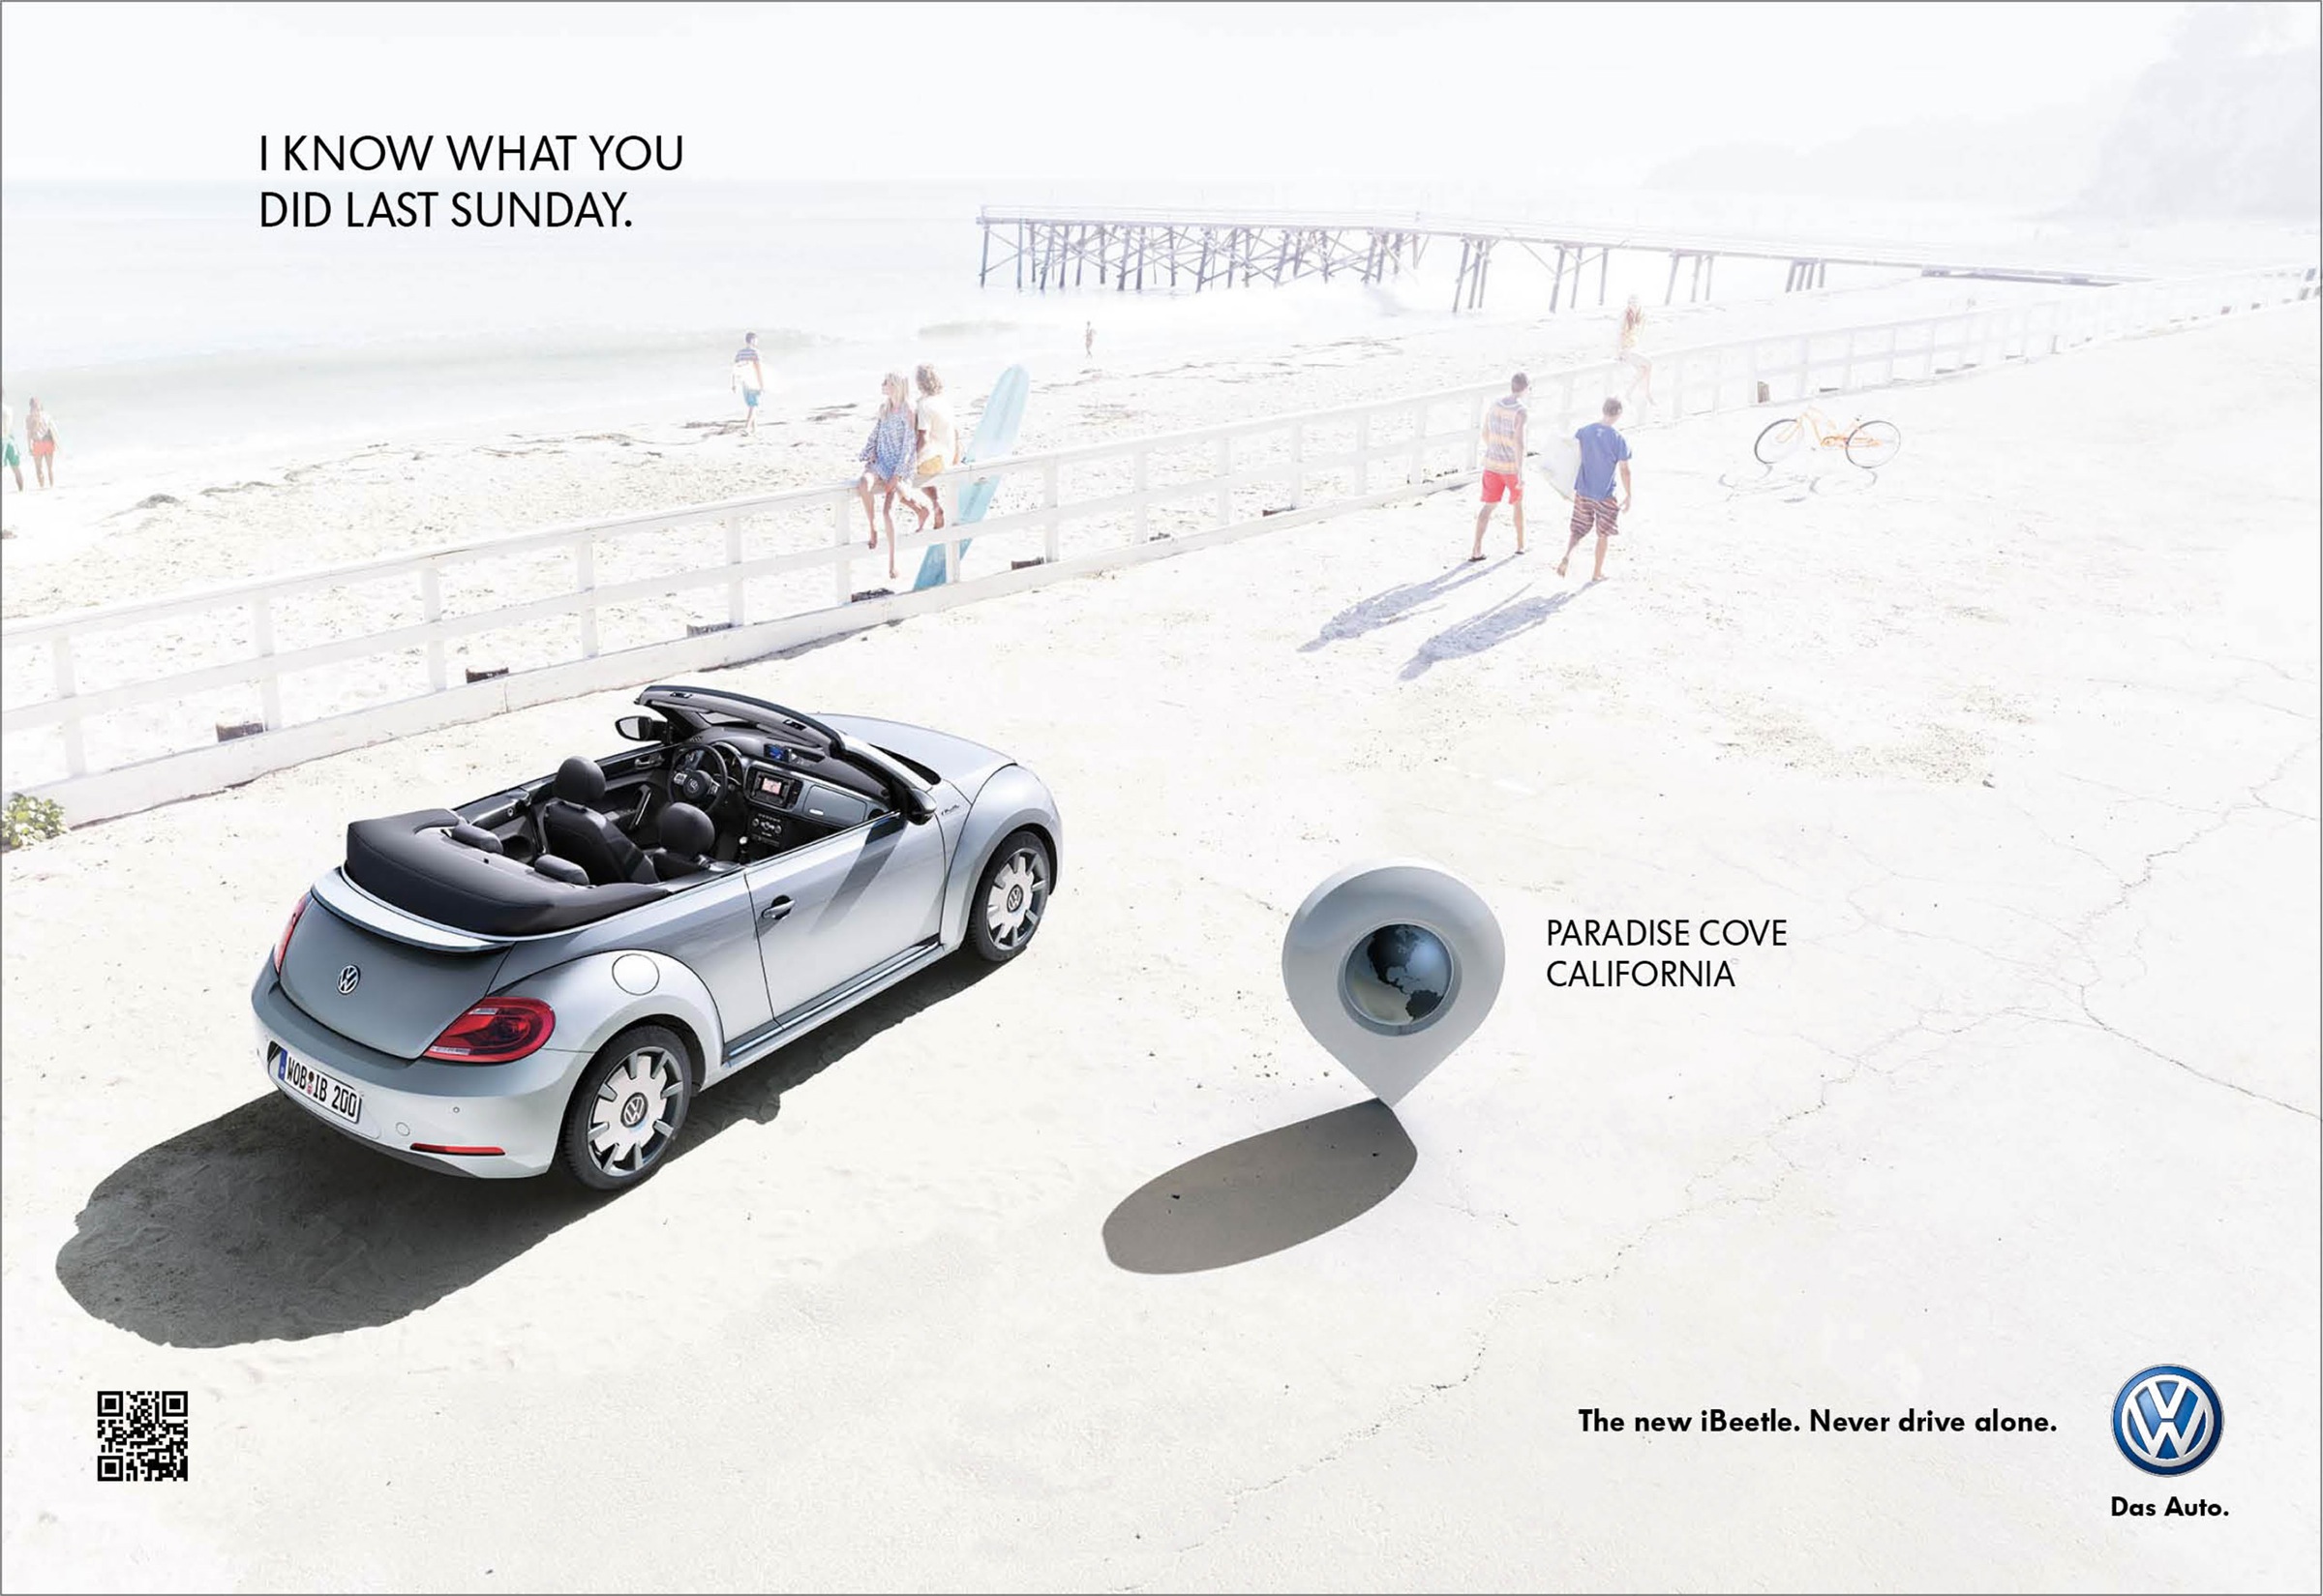 大众ibeetle新车平面广告设计